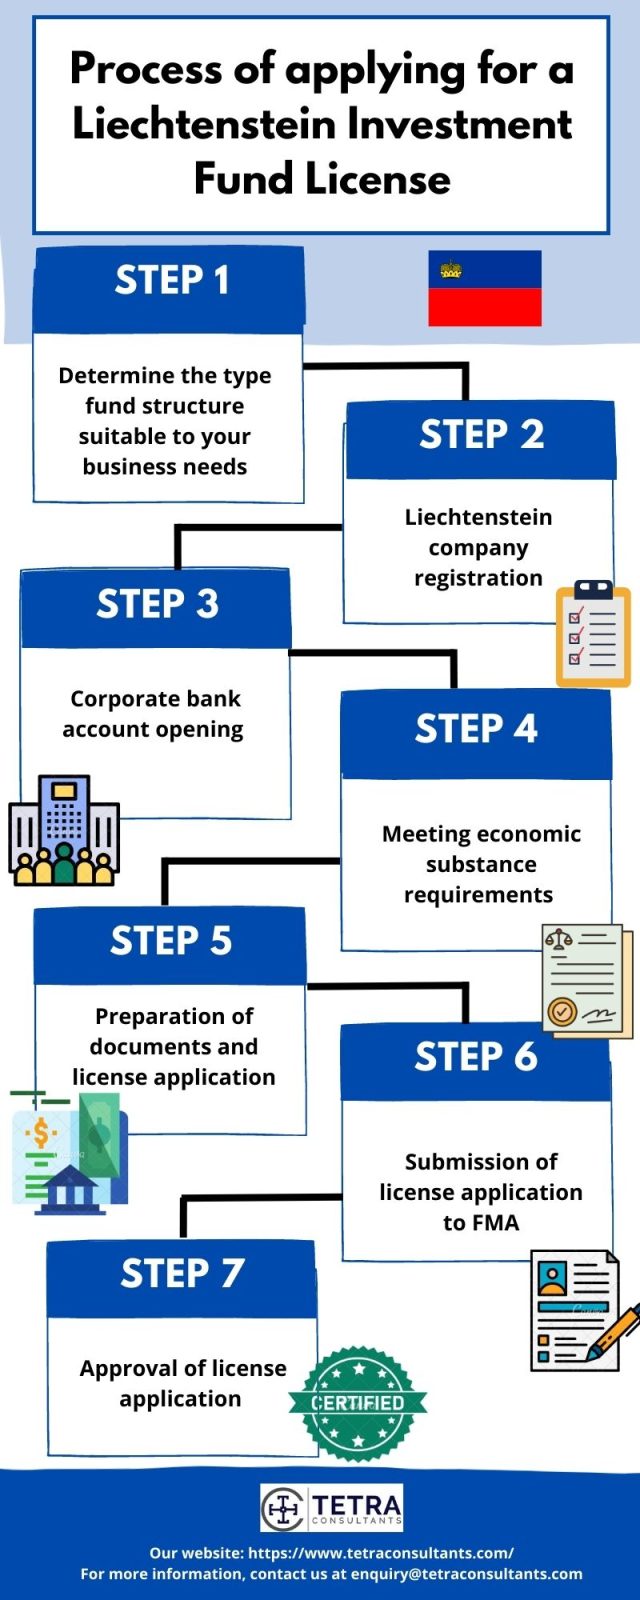 Process of applying for a Liechtenstein Investment Fund License